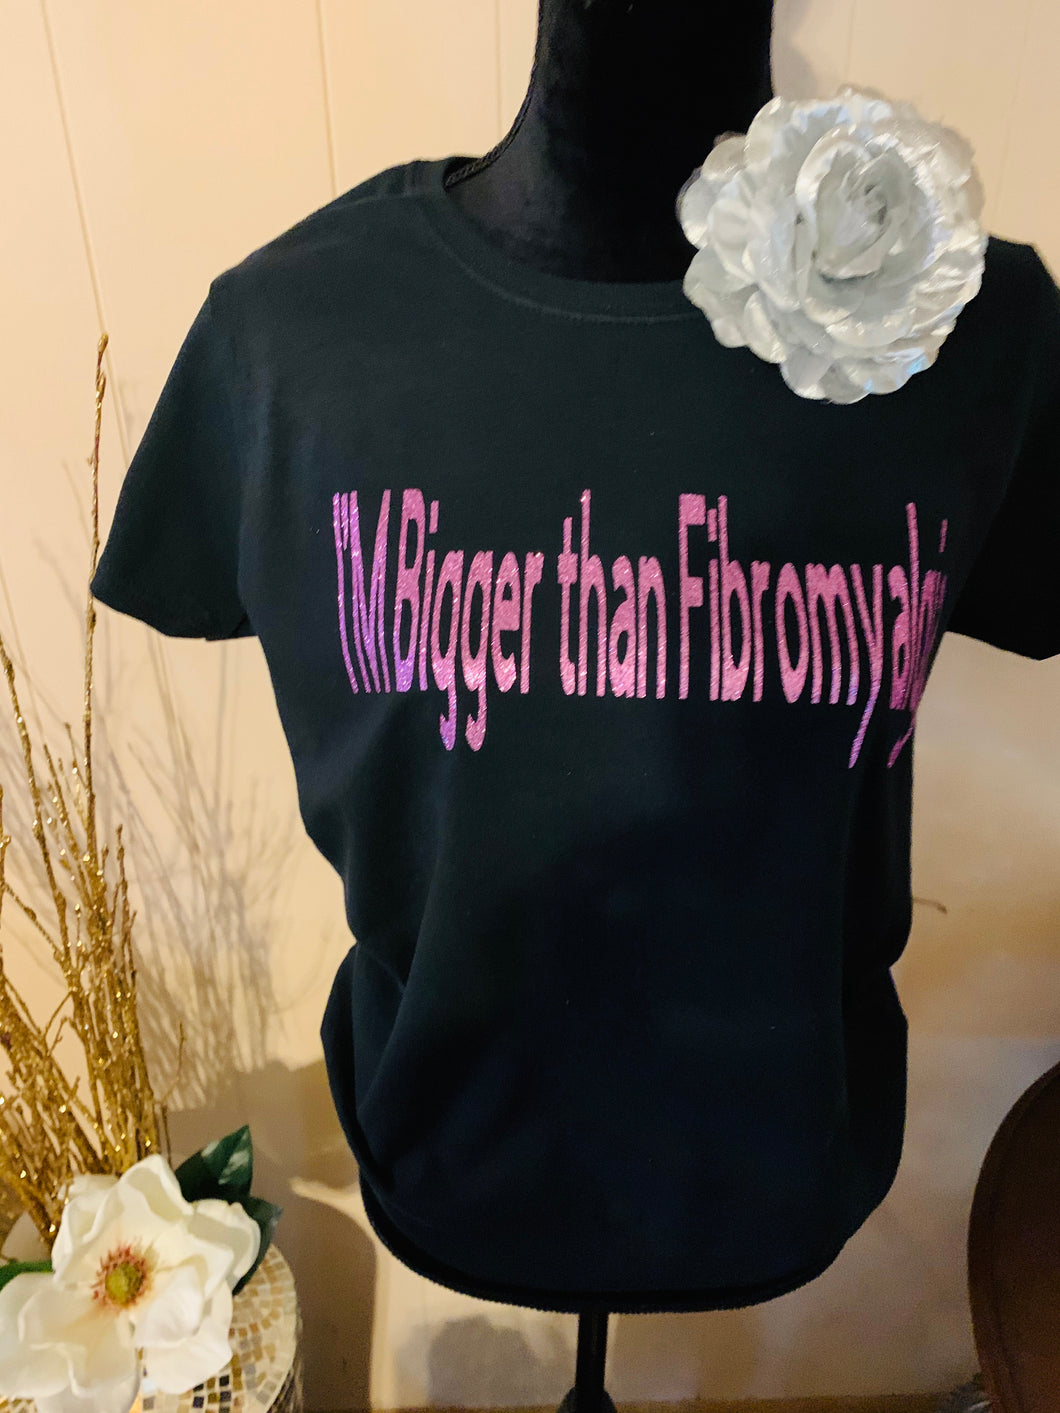 I’M Tougher than Fibromyalgia